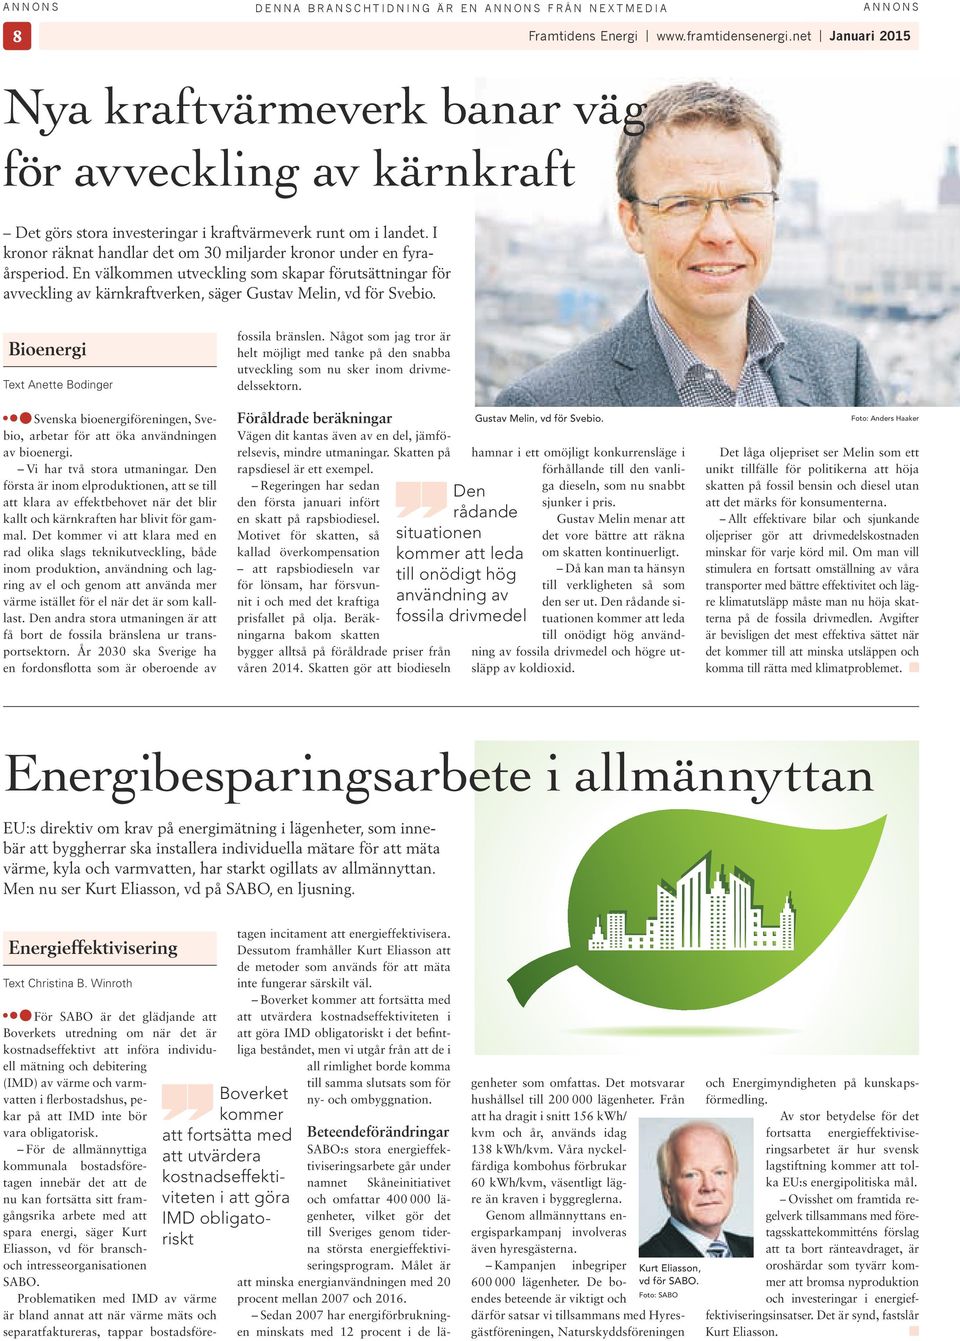 Bioenergi Text Anette Bodinger Svenska bioenergiföreningen, Svebio, arbetar för att öka användningen av bioenergi. Vi har två stora utmaningar.